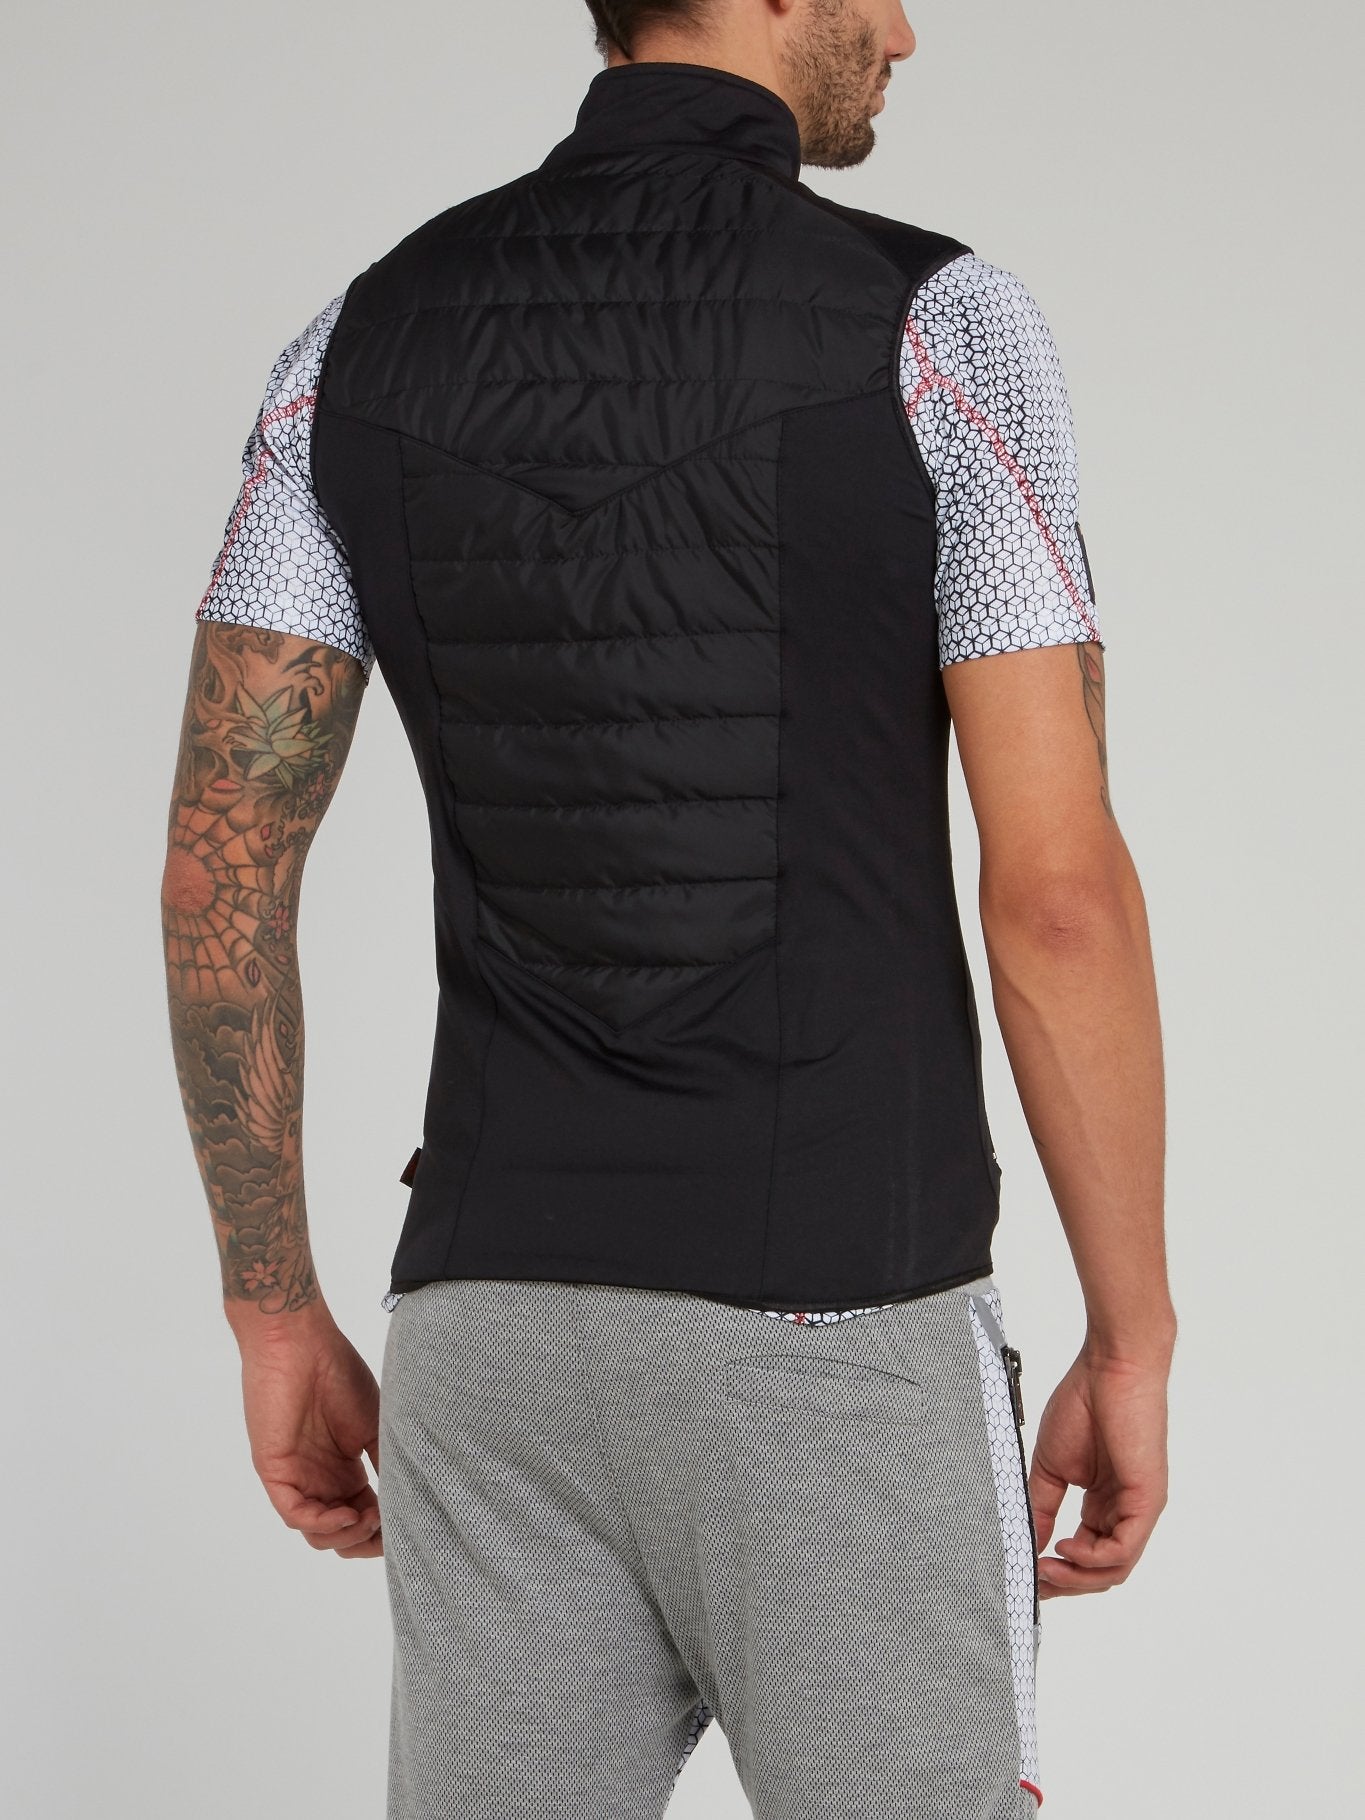 Black Quilted Jogging Vest